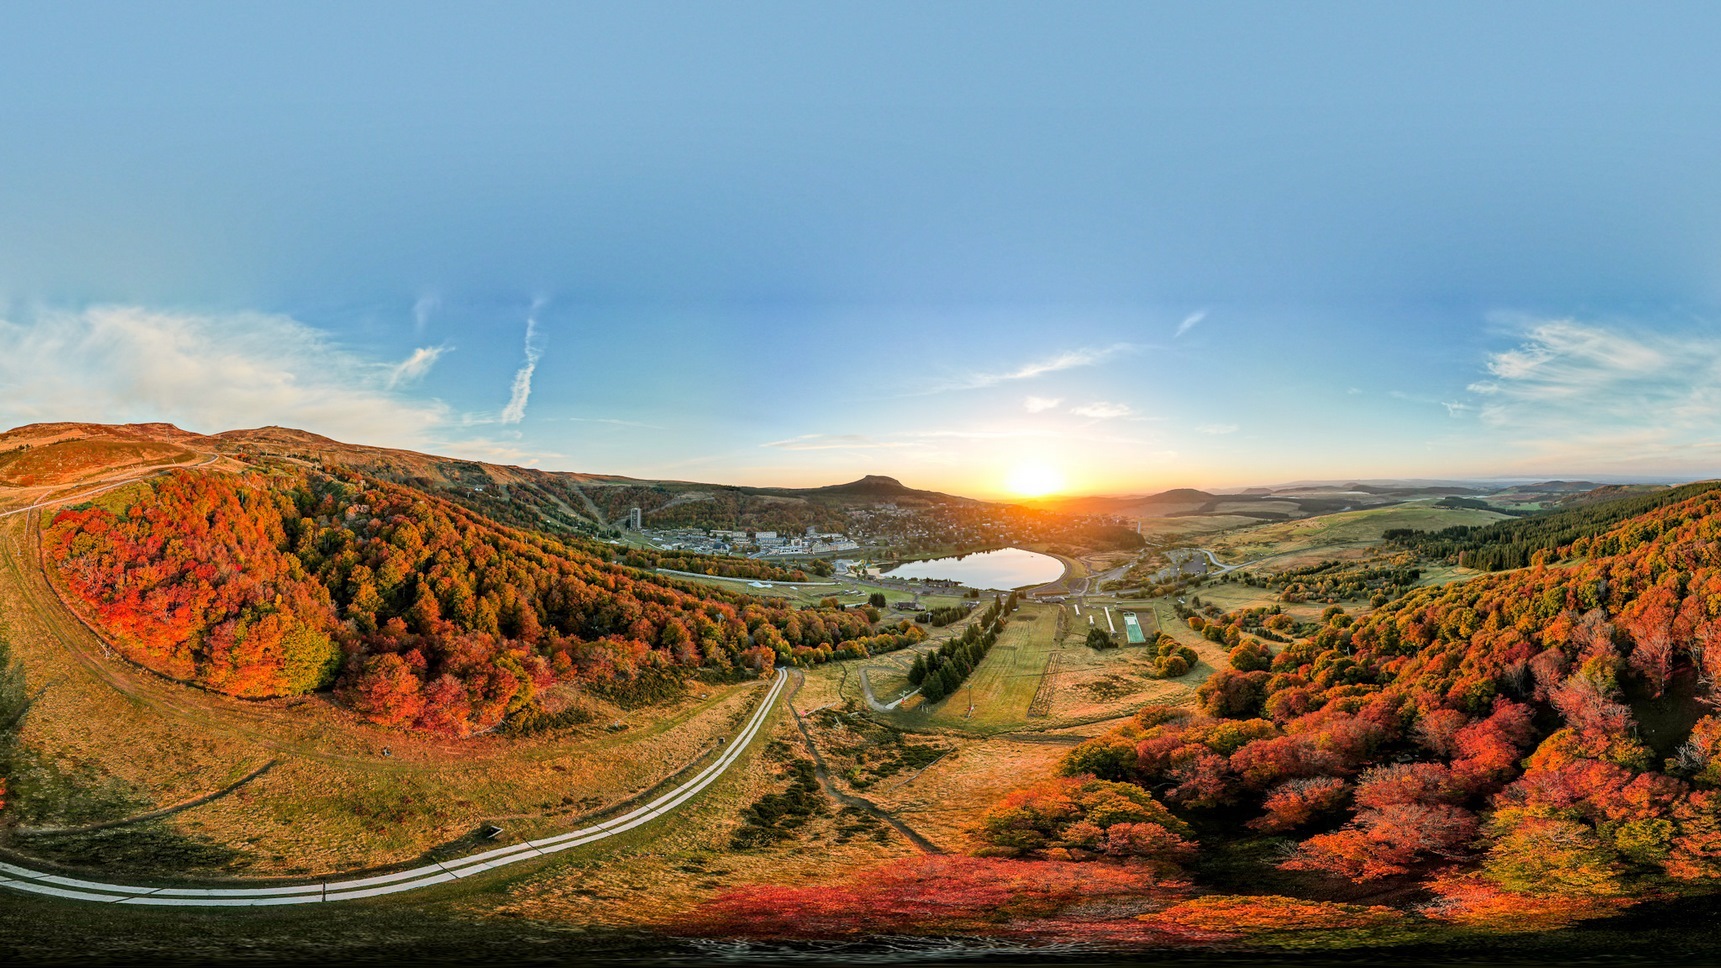 Super Besse, couleurs uniques des arbres de la station de Super Besse au lever de soleil en Septembre - Octobre